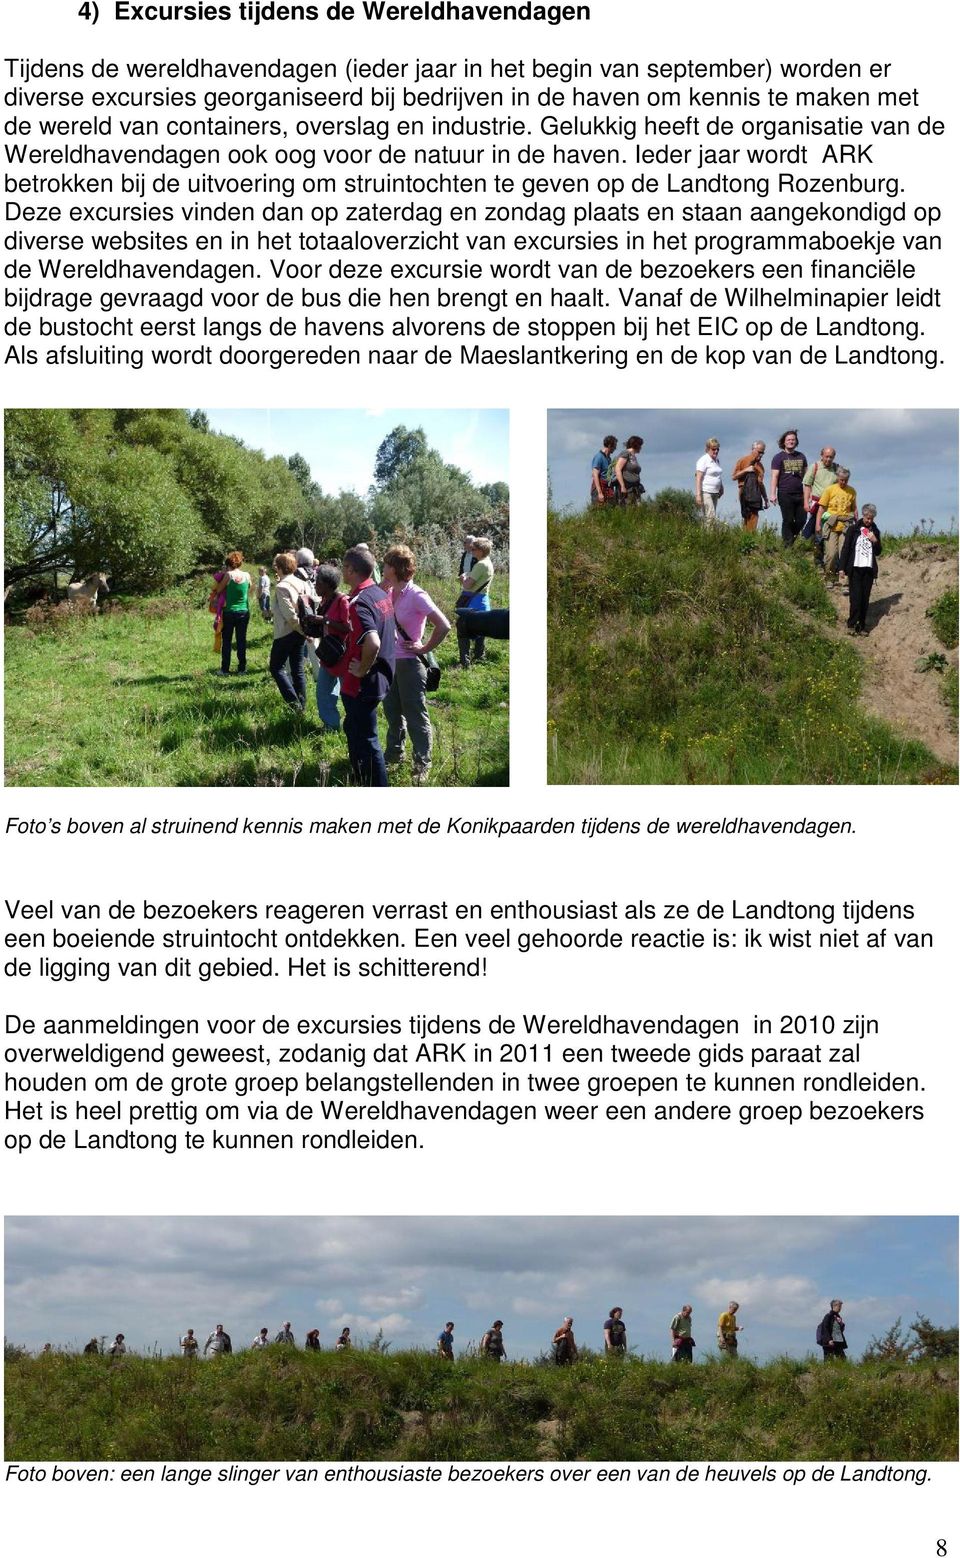 Ieder jaar wordt ARK betrokken bij de uitvoering om struintochten te geven op de Landtong Rozenburg.